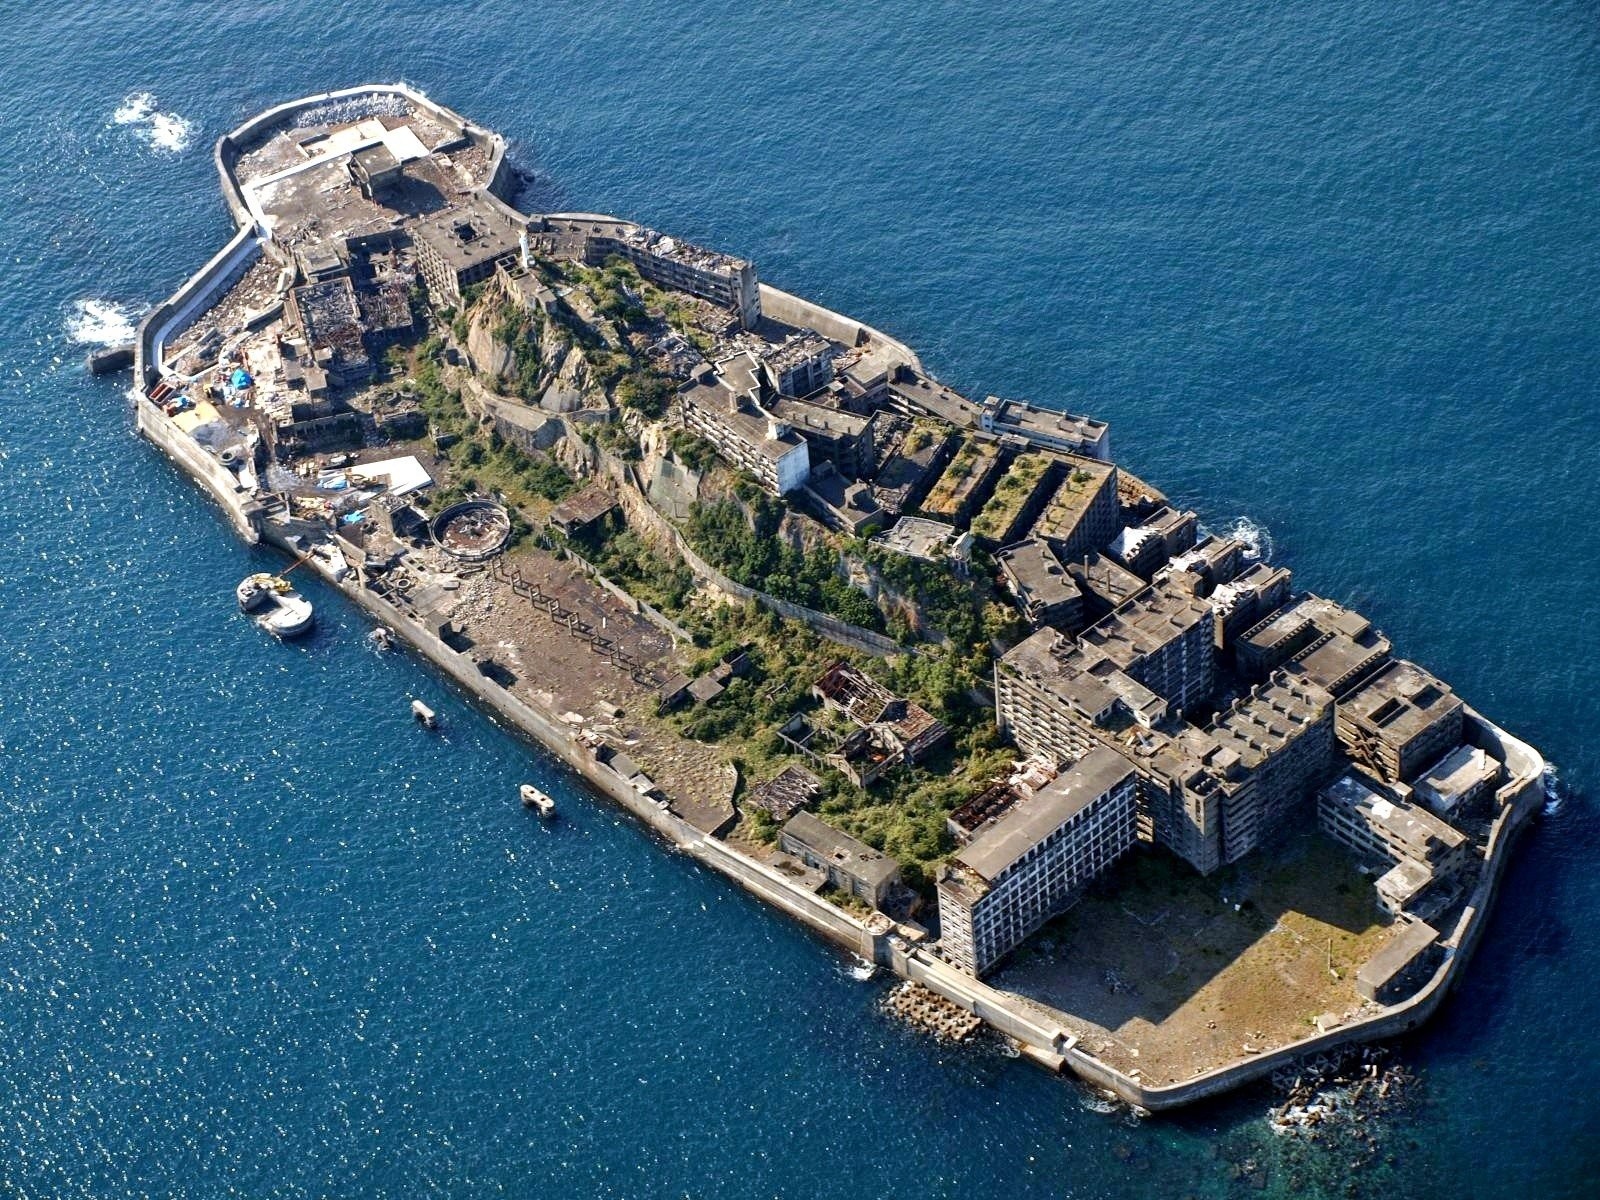 battle-ship-island-nagasaki-japan.jpg